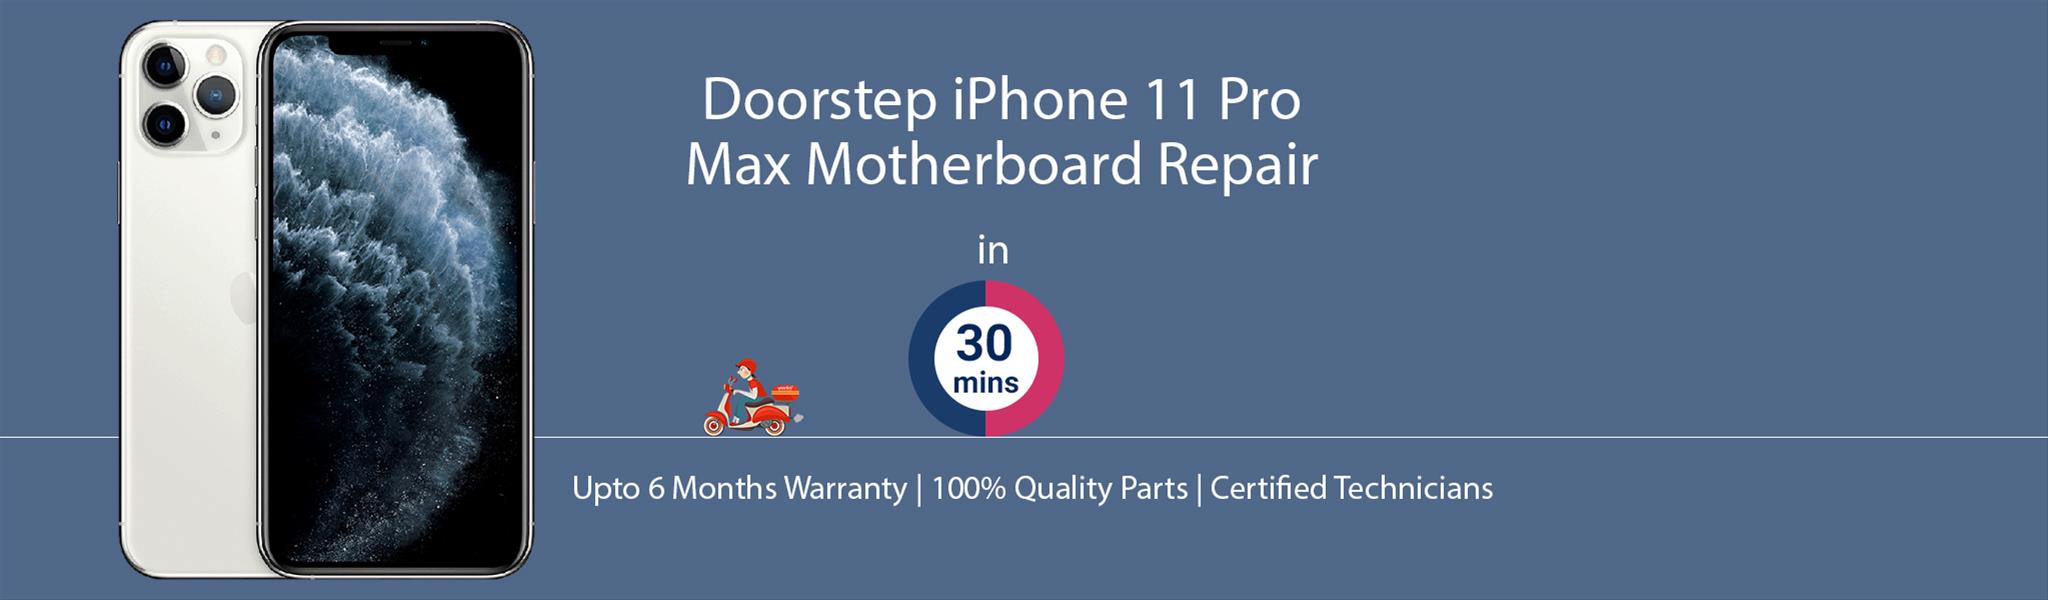 iphone-11-pro-max-motherboard-repair.jpg